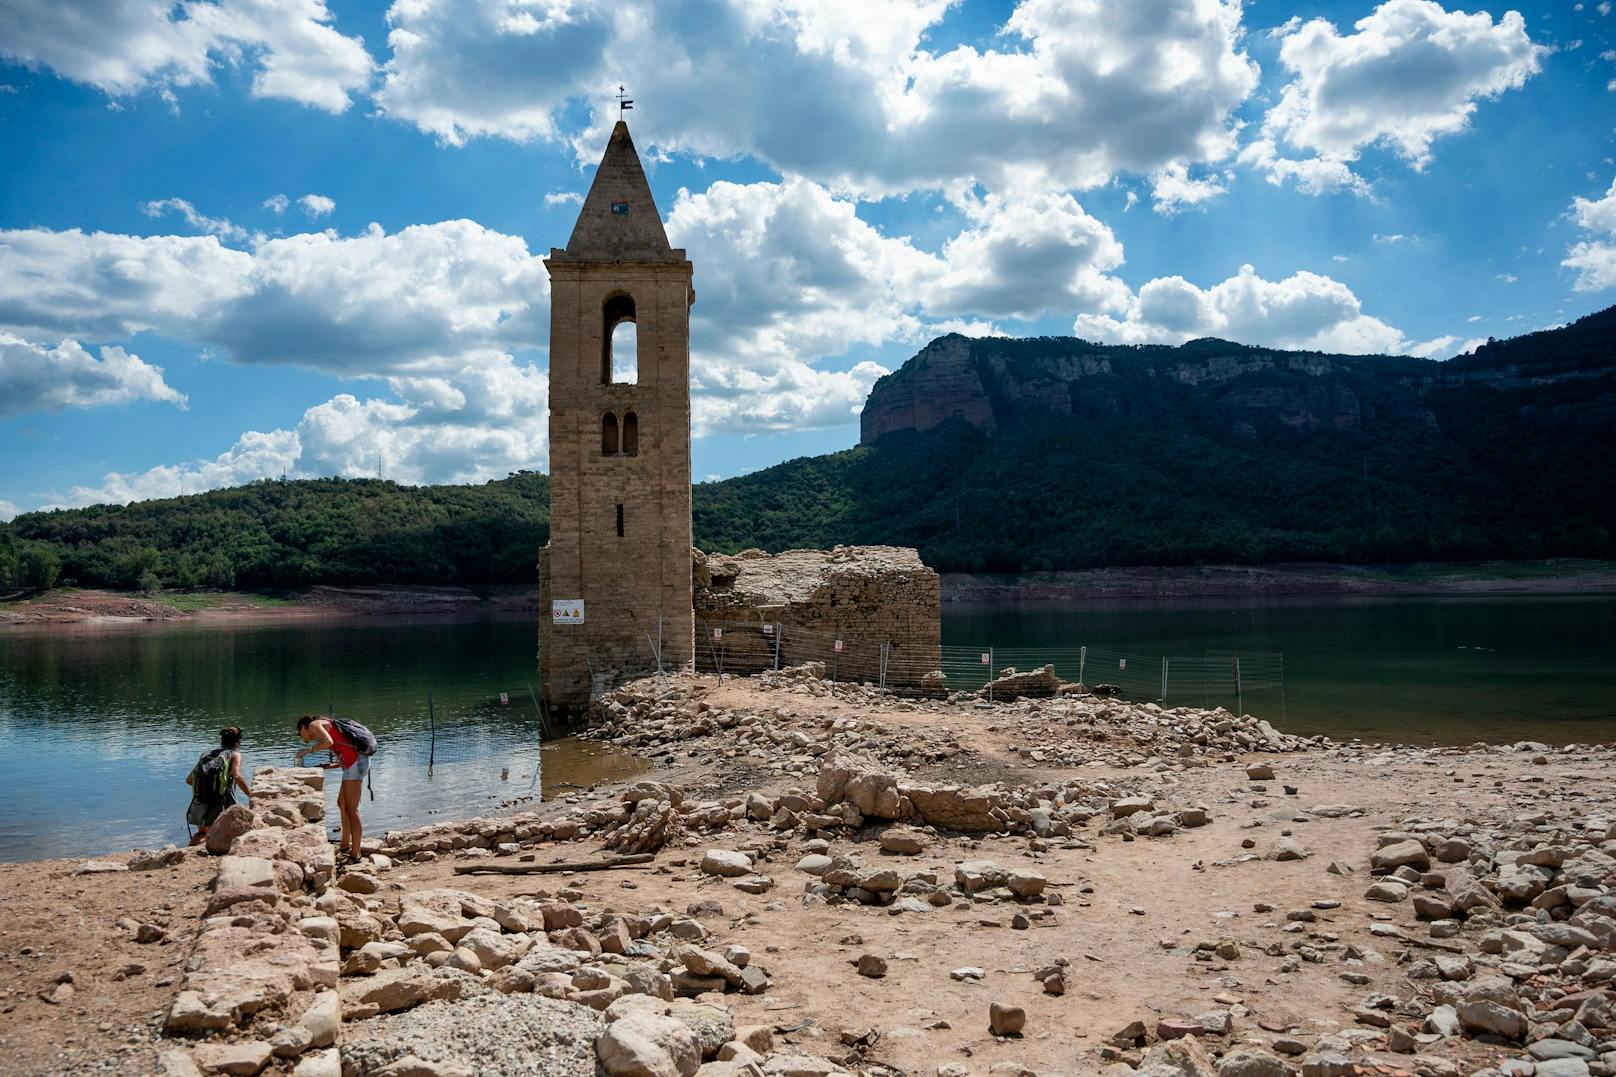 Aufgrund des niedrigen Wasserstands ist die alte Kirche Sant Romà de Sau in Spanien komplett aus dem Stausee aufgetaucht.